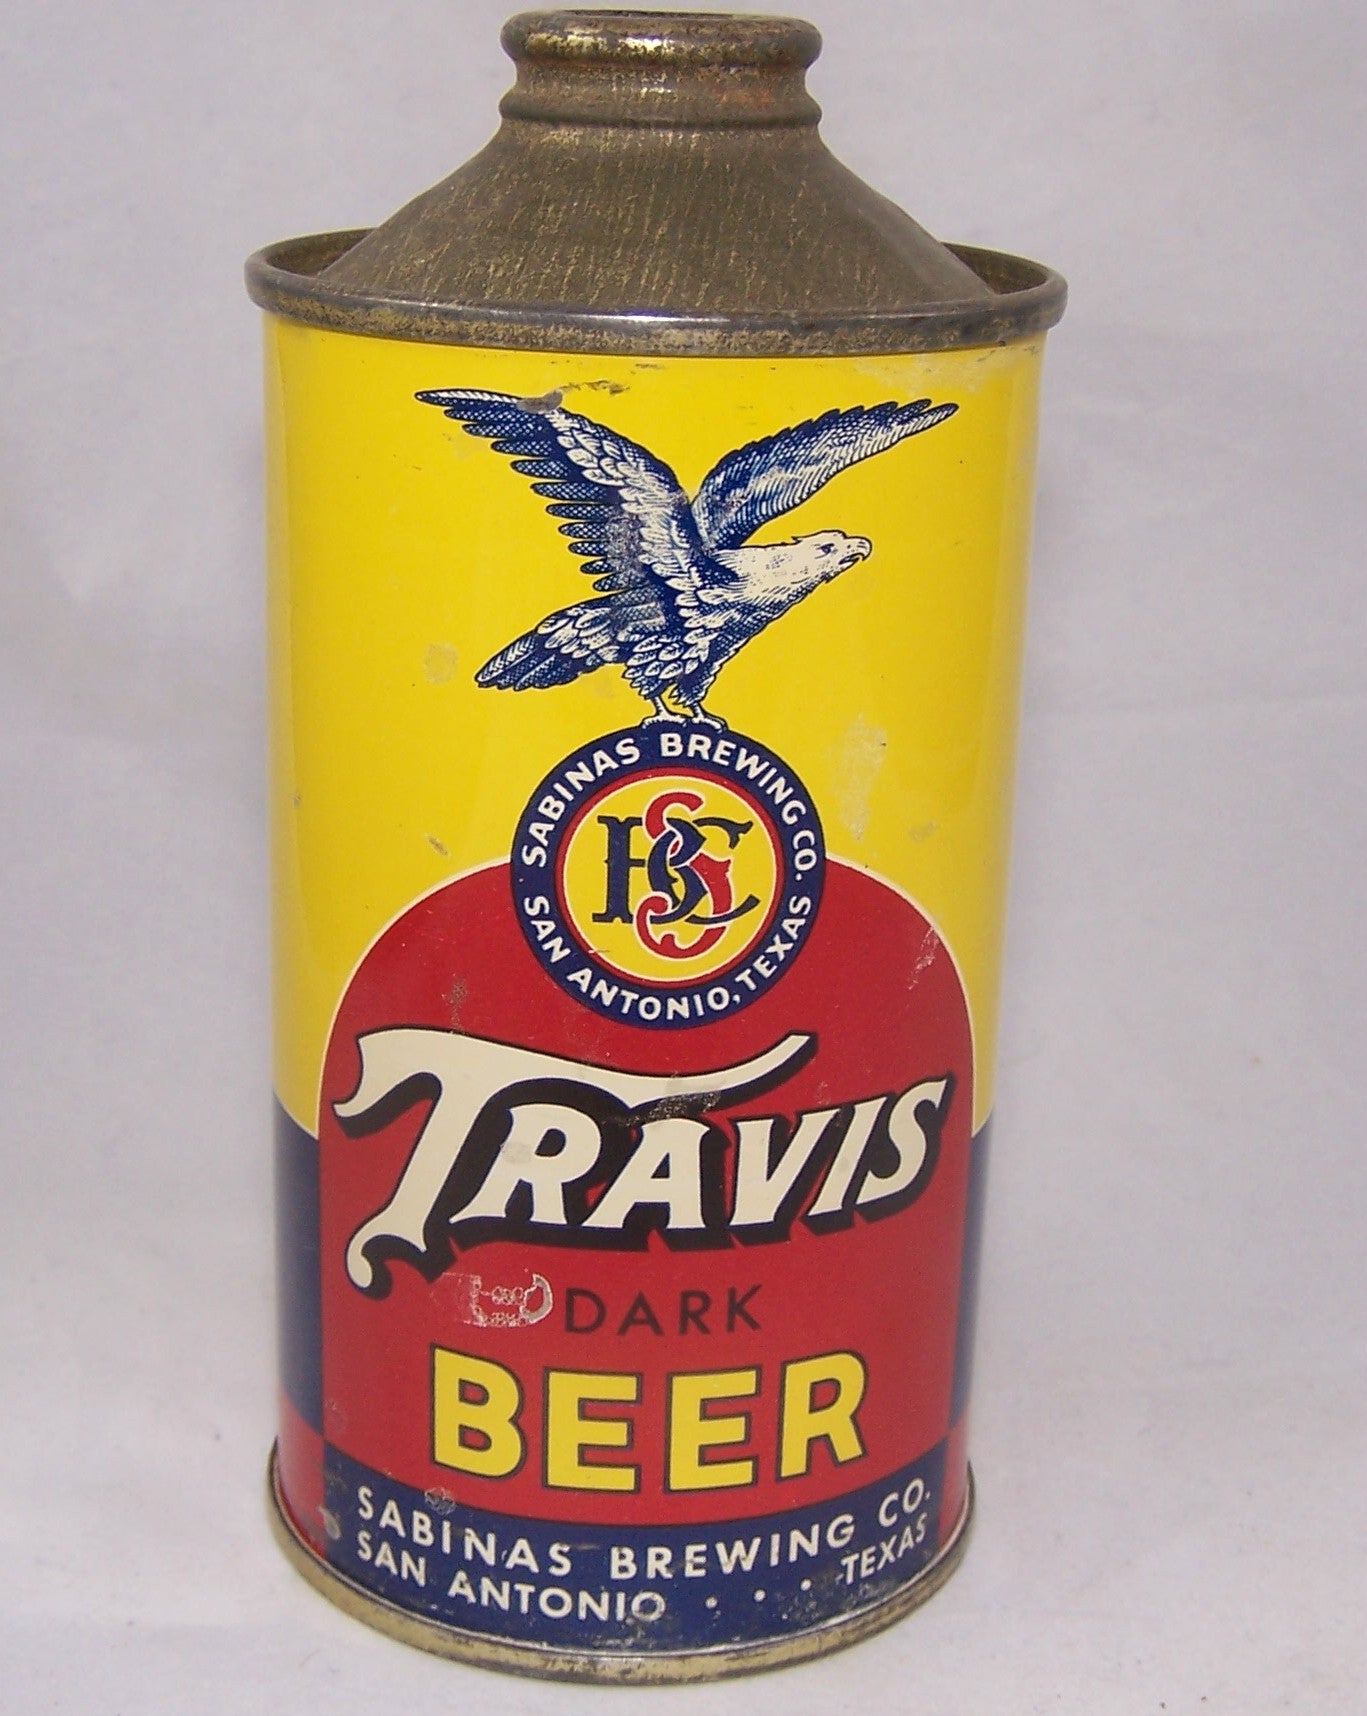 Travis Dark Beer, USBC Actual 187-06, Grade 1 to 1/1+ Sold on 09/09/16